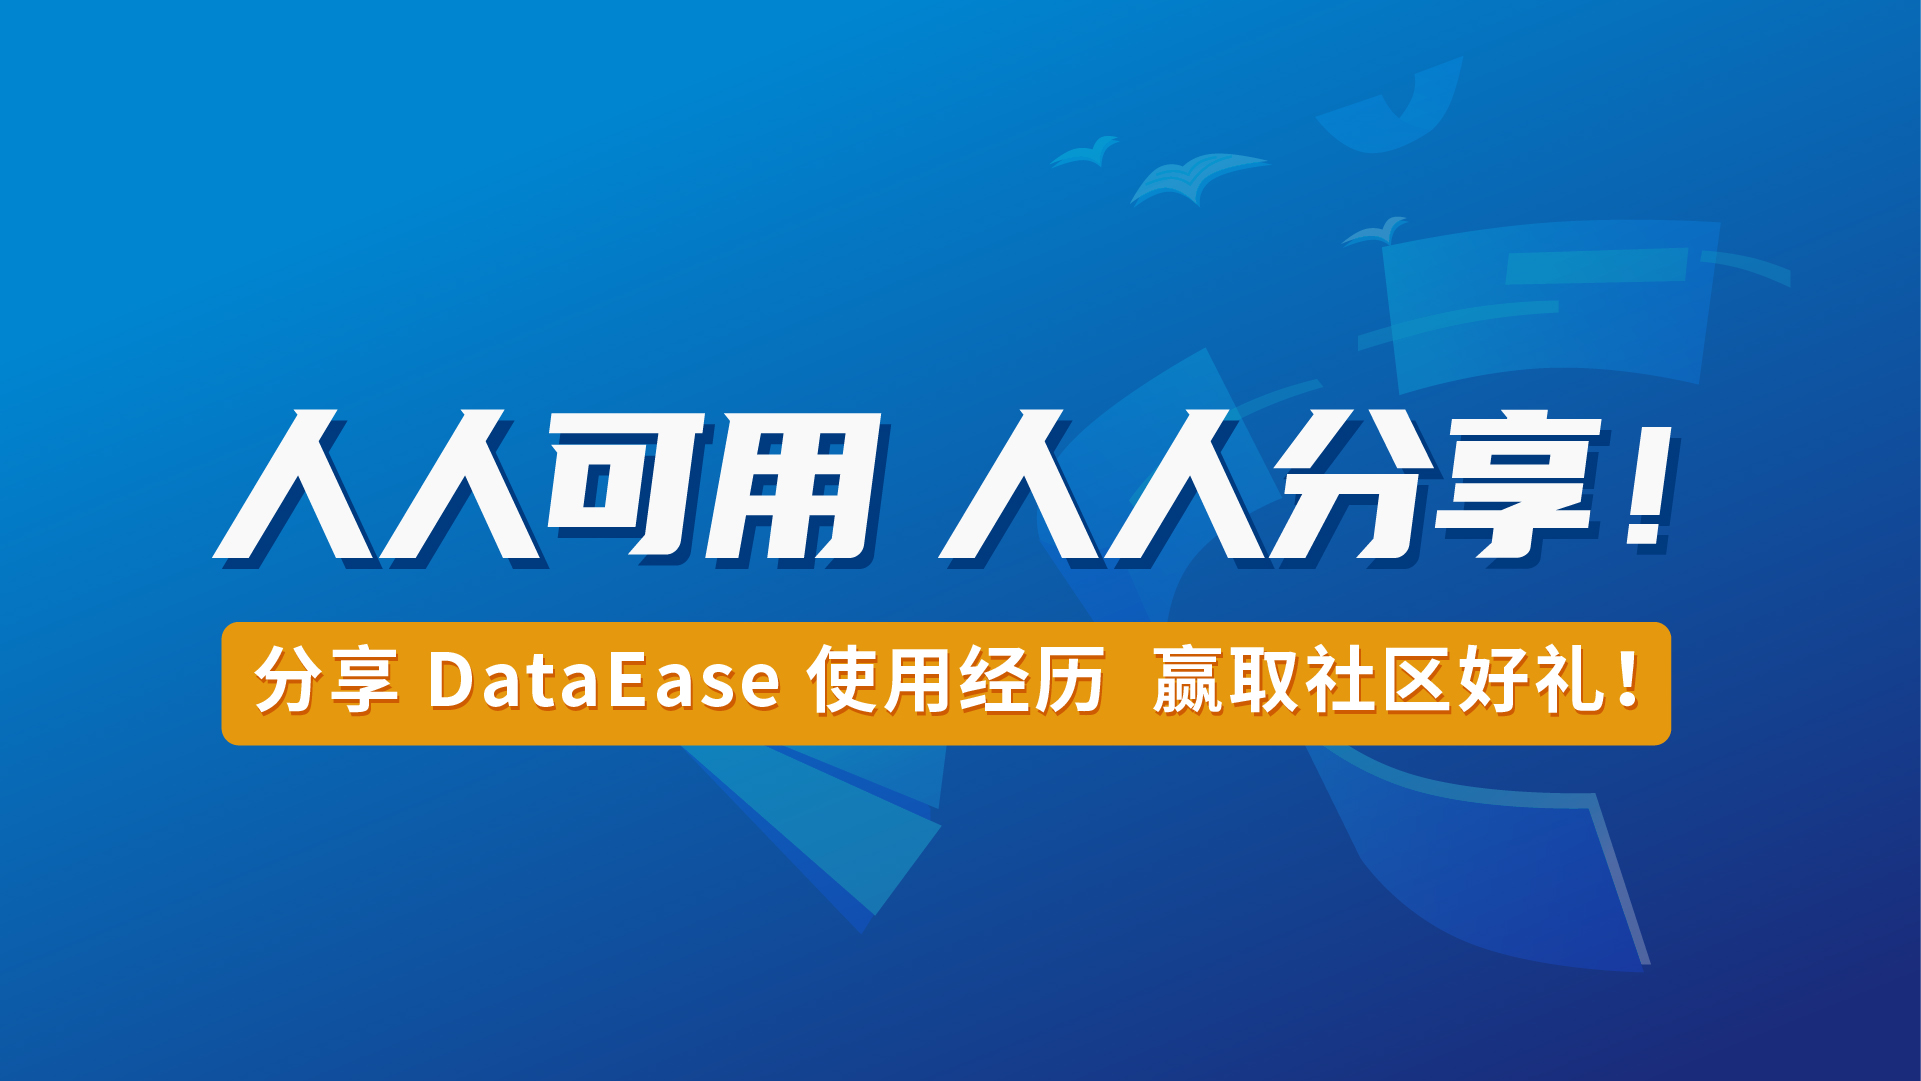 有奖征文丨人人可用的DataEase，期待您的使用分享